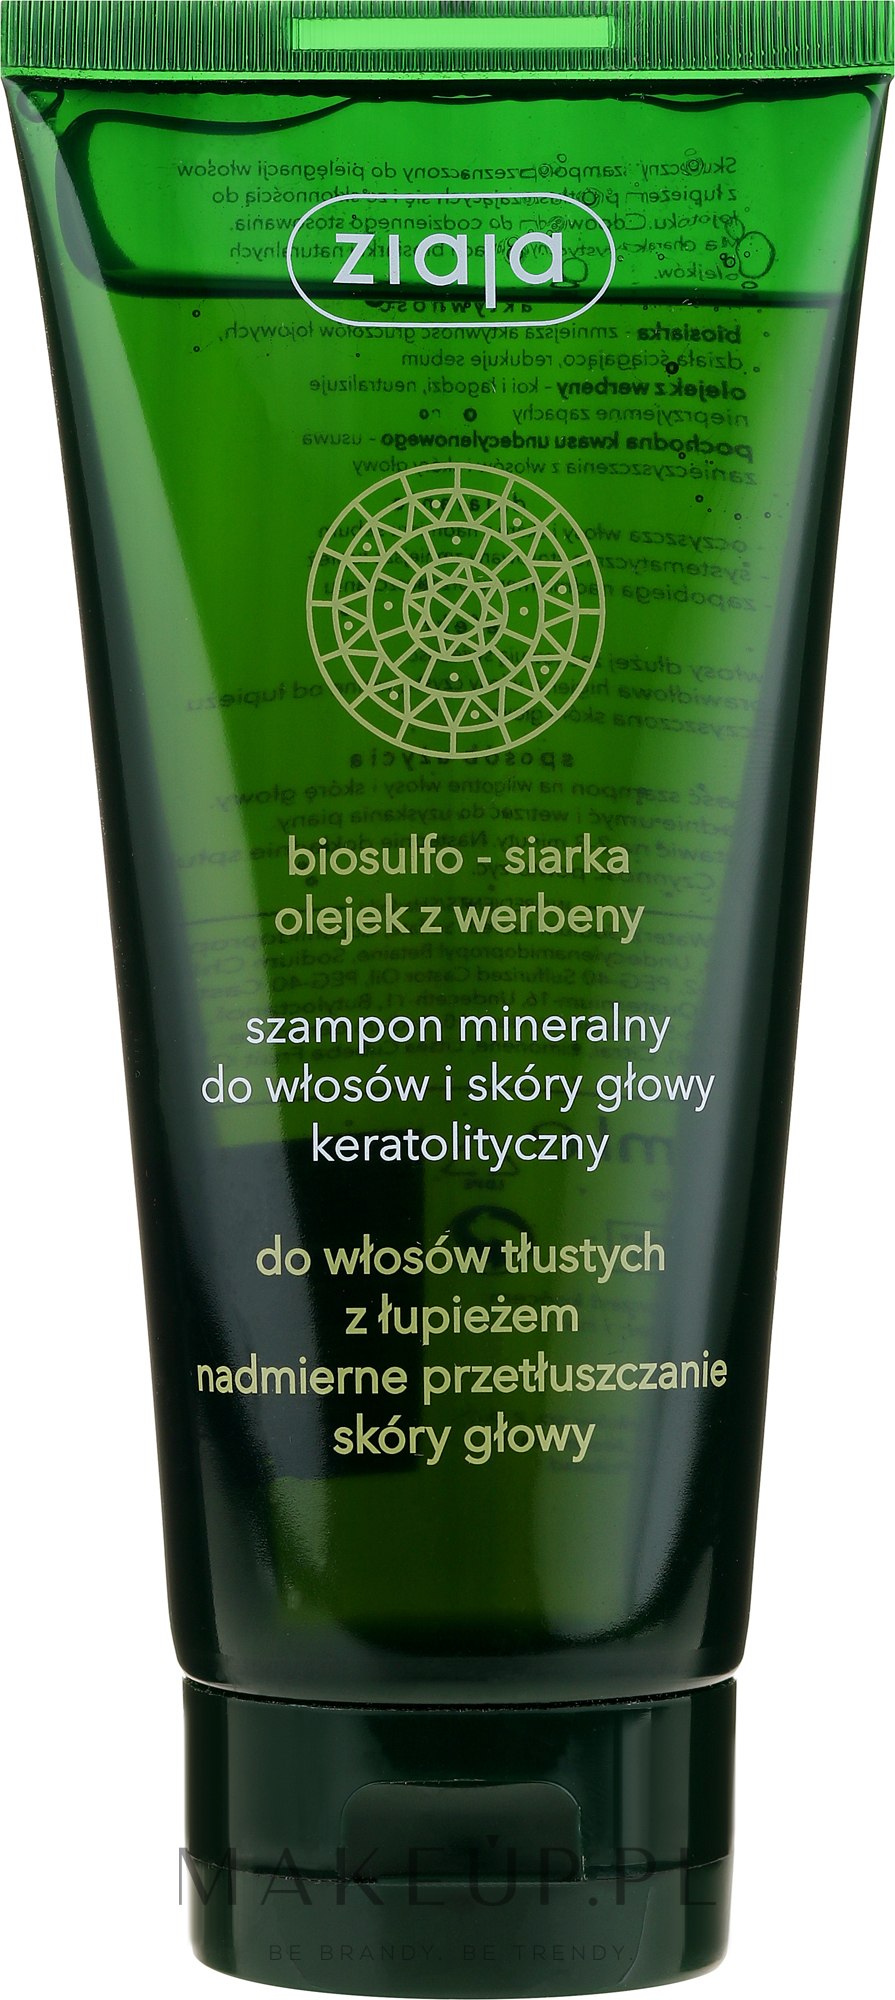 ziaja szampon bio sulfo